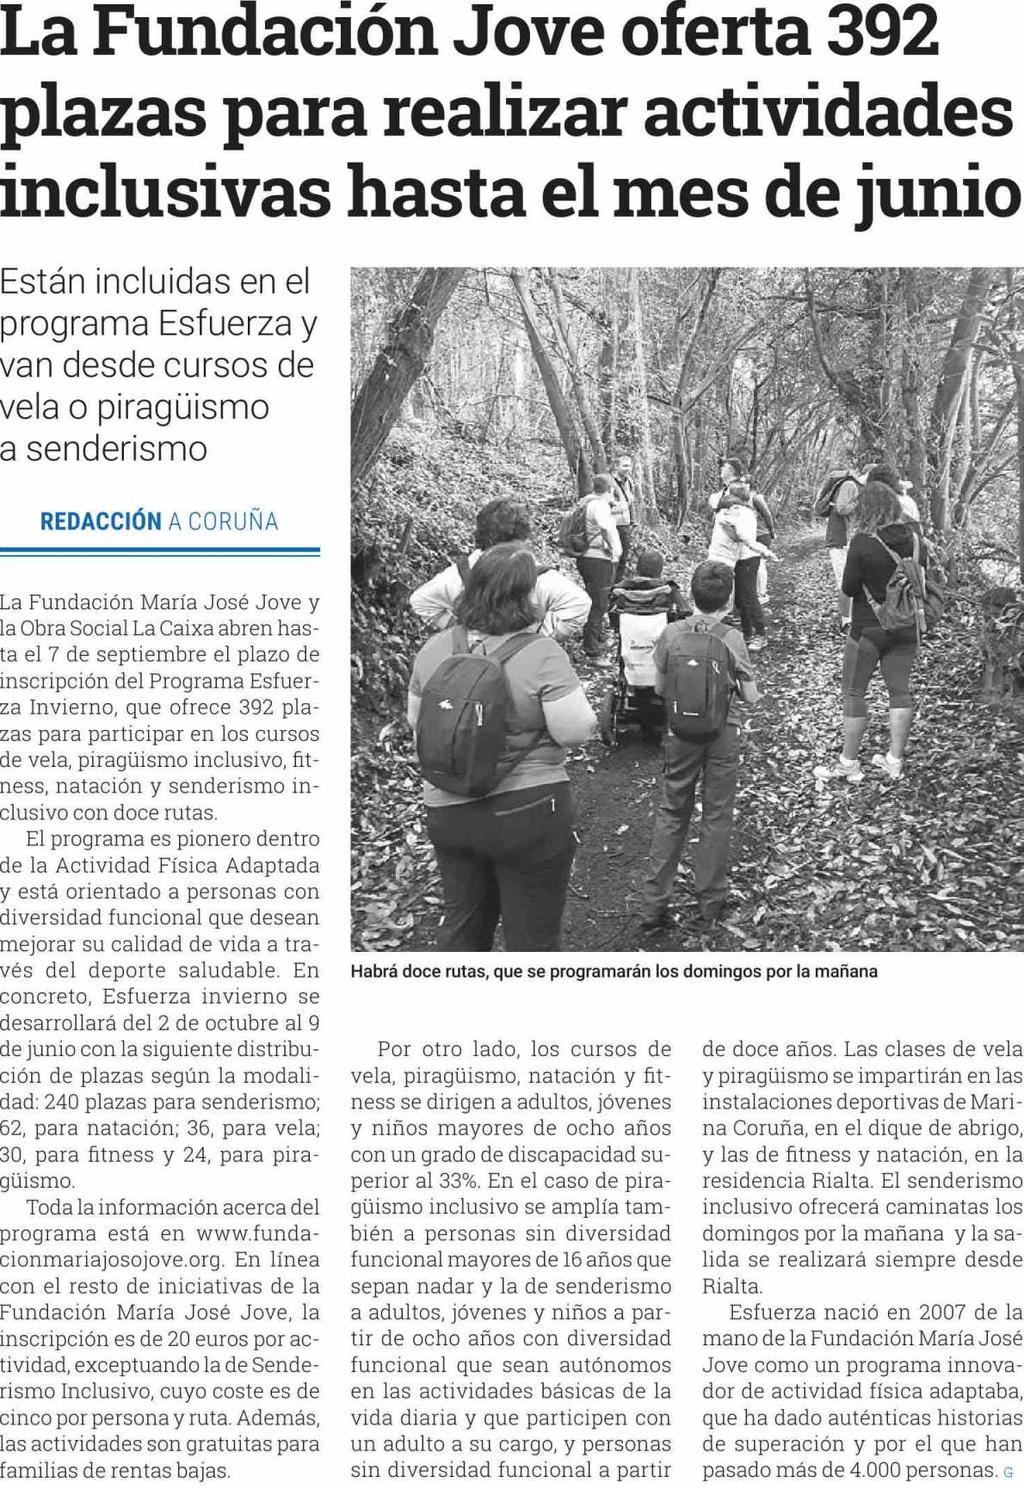 Diario de Bergantiños Lugo 28/08/18 Prensa: Diaria Tirada: 250 Ejemplares Difusión: 250 Ejemplares Página: 16 Sección: REGIONAL